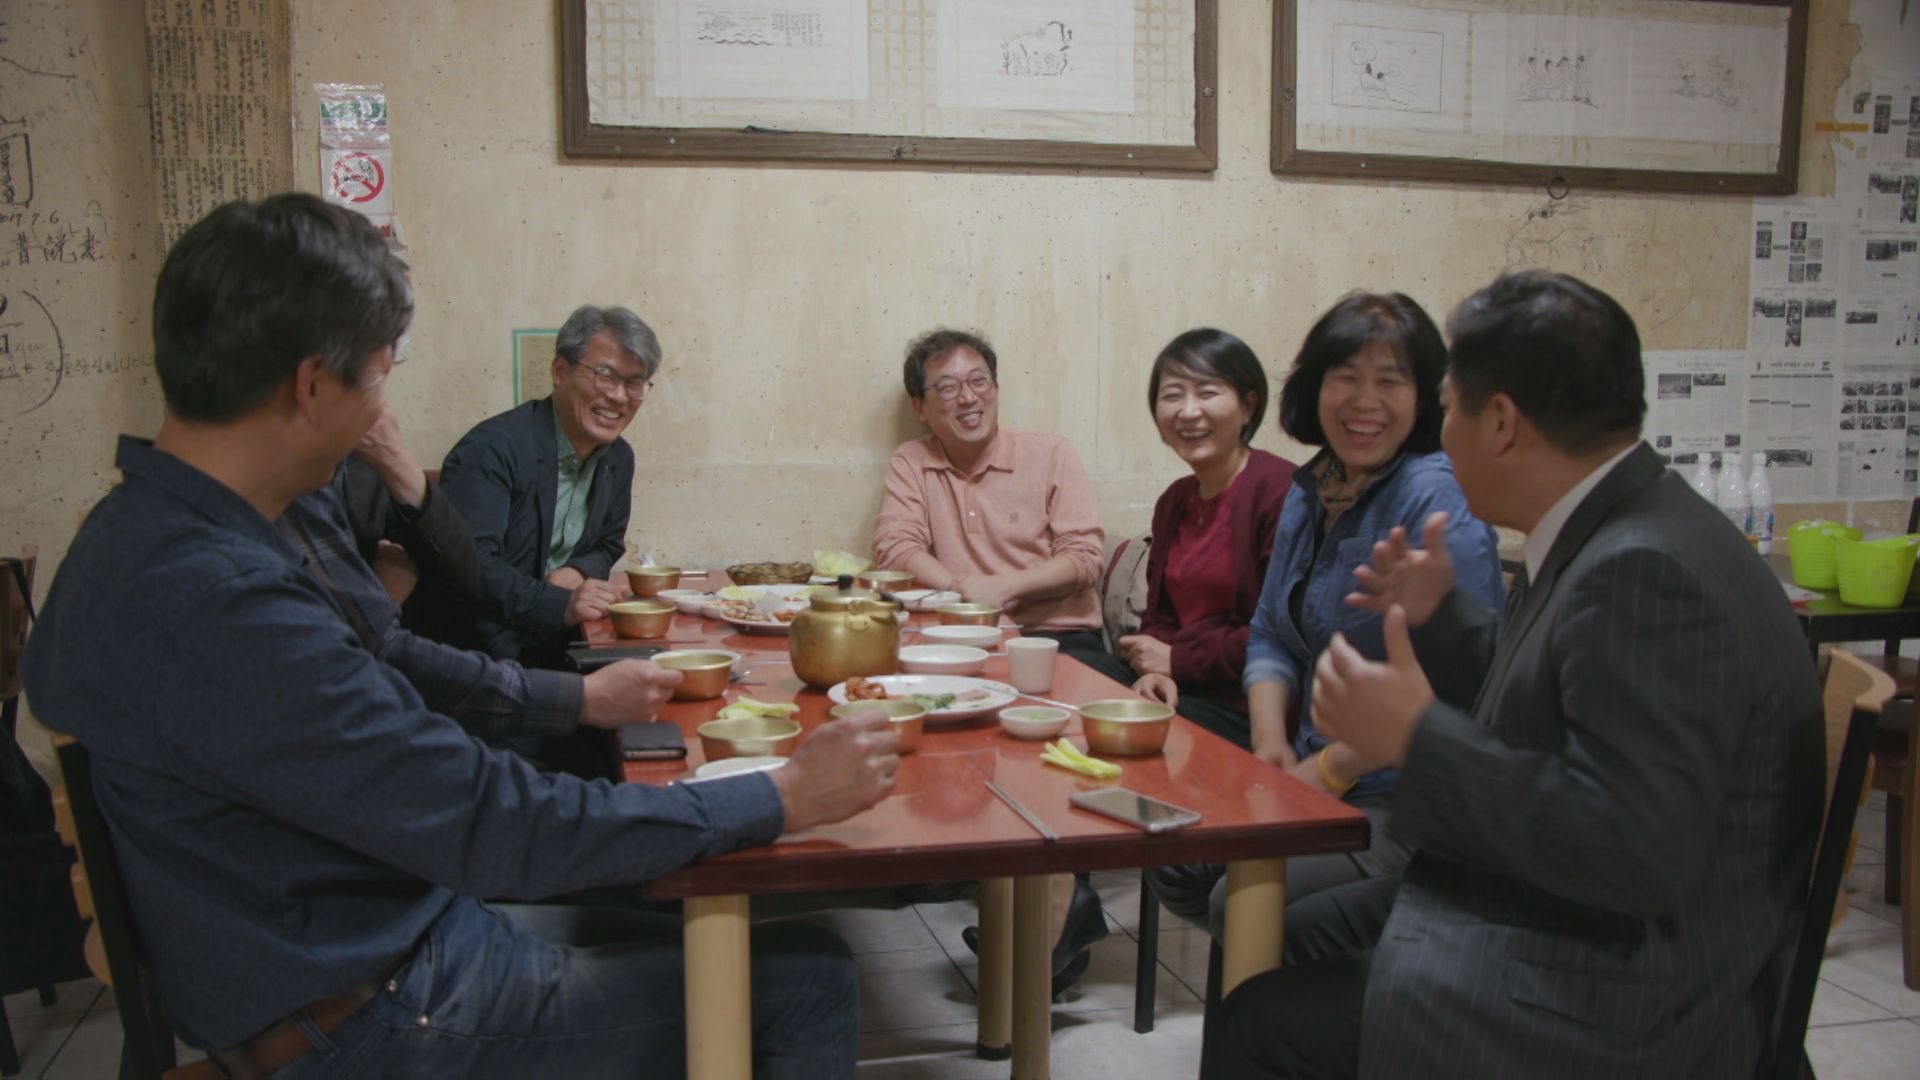 차명숙 씨(오른쪽에서 두 번째)가 운영하는 식당에서 지인들과 함께한 박명배 씨(가장 오른쪽).